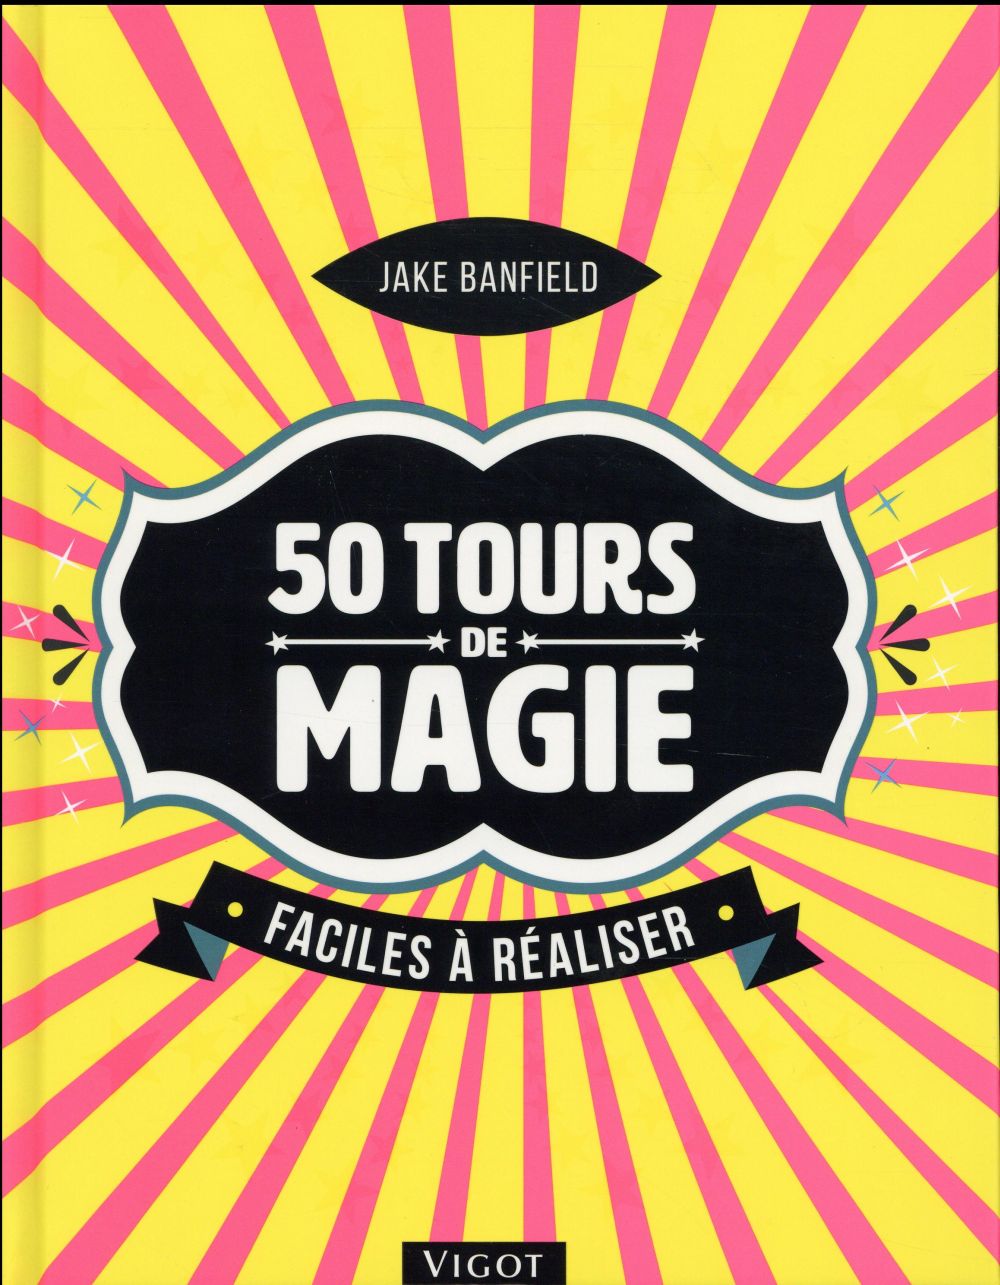 50 TOURS DE MAGIE FACILES A REALISER